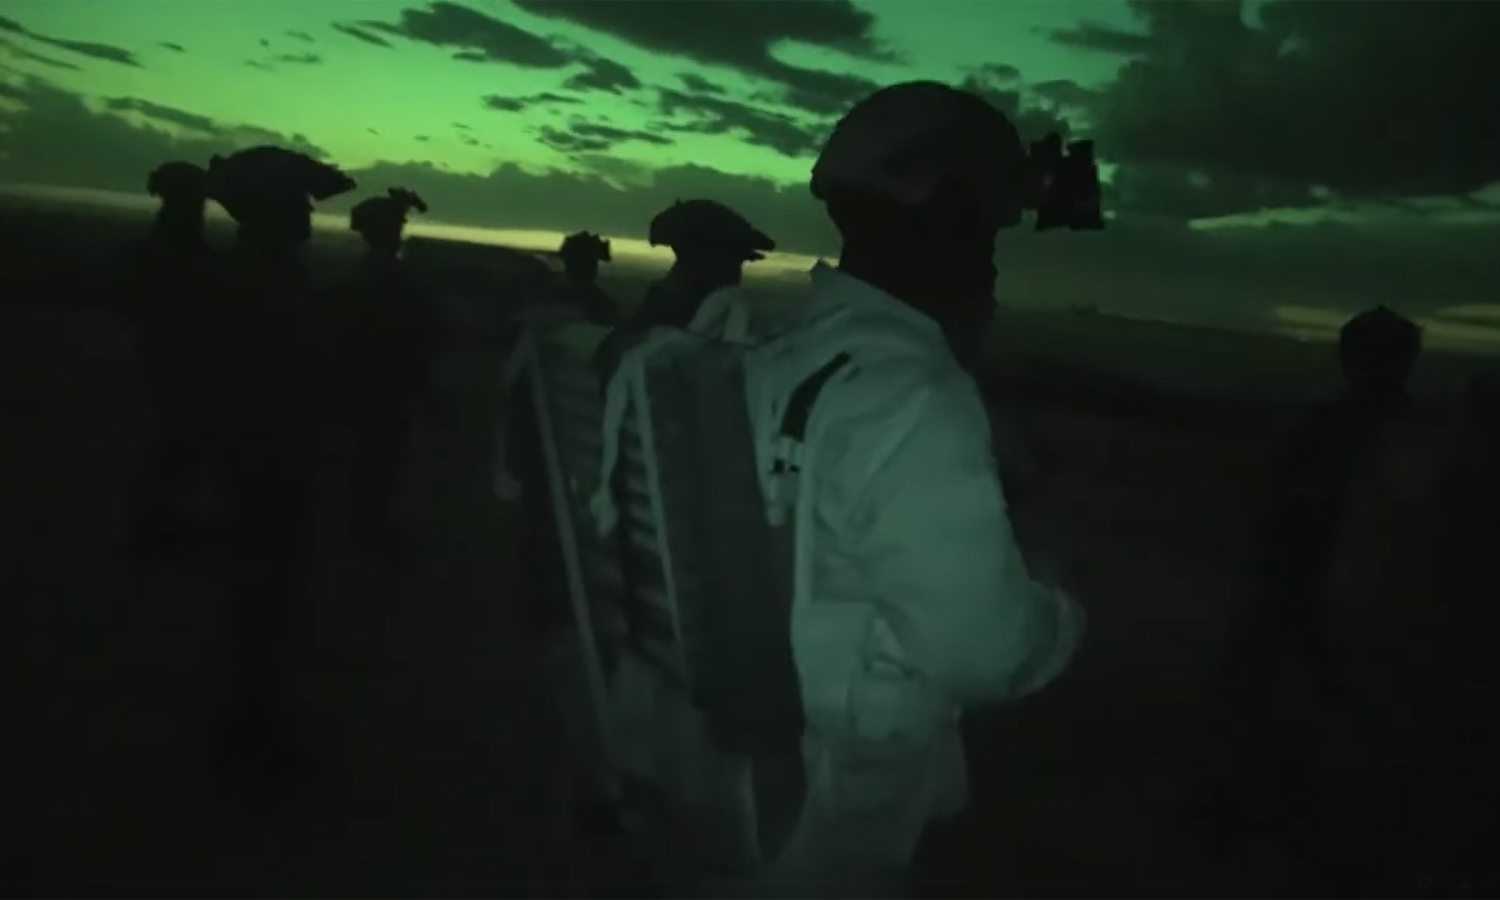 مقاتلون من قوات سوريا الديمقراطية خلال حملة أمنية استهدفت خلايا تنظيم الدولة شمال شرقي سوريا (SDF)